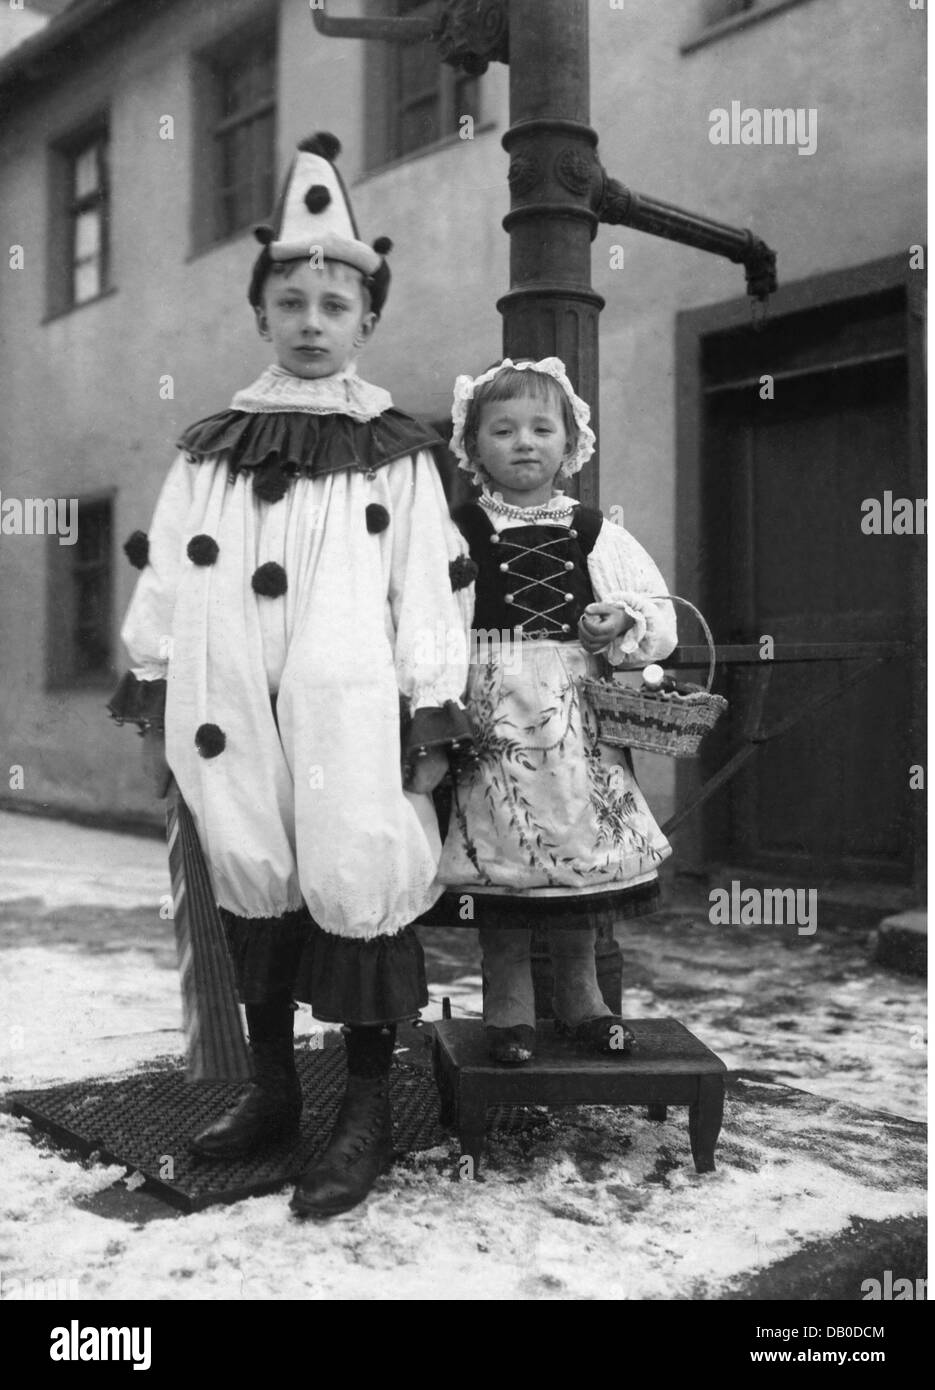 Fête, carnaval, enfants déguisés en clown et petite cagoule rouge, pleine longueur, vers 1910, droits supplémentaires-Clearences-non disponible Banque D'Images